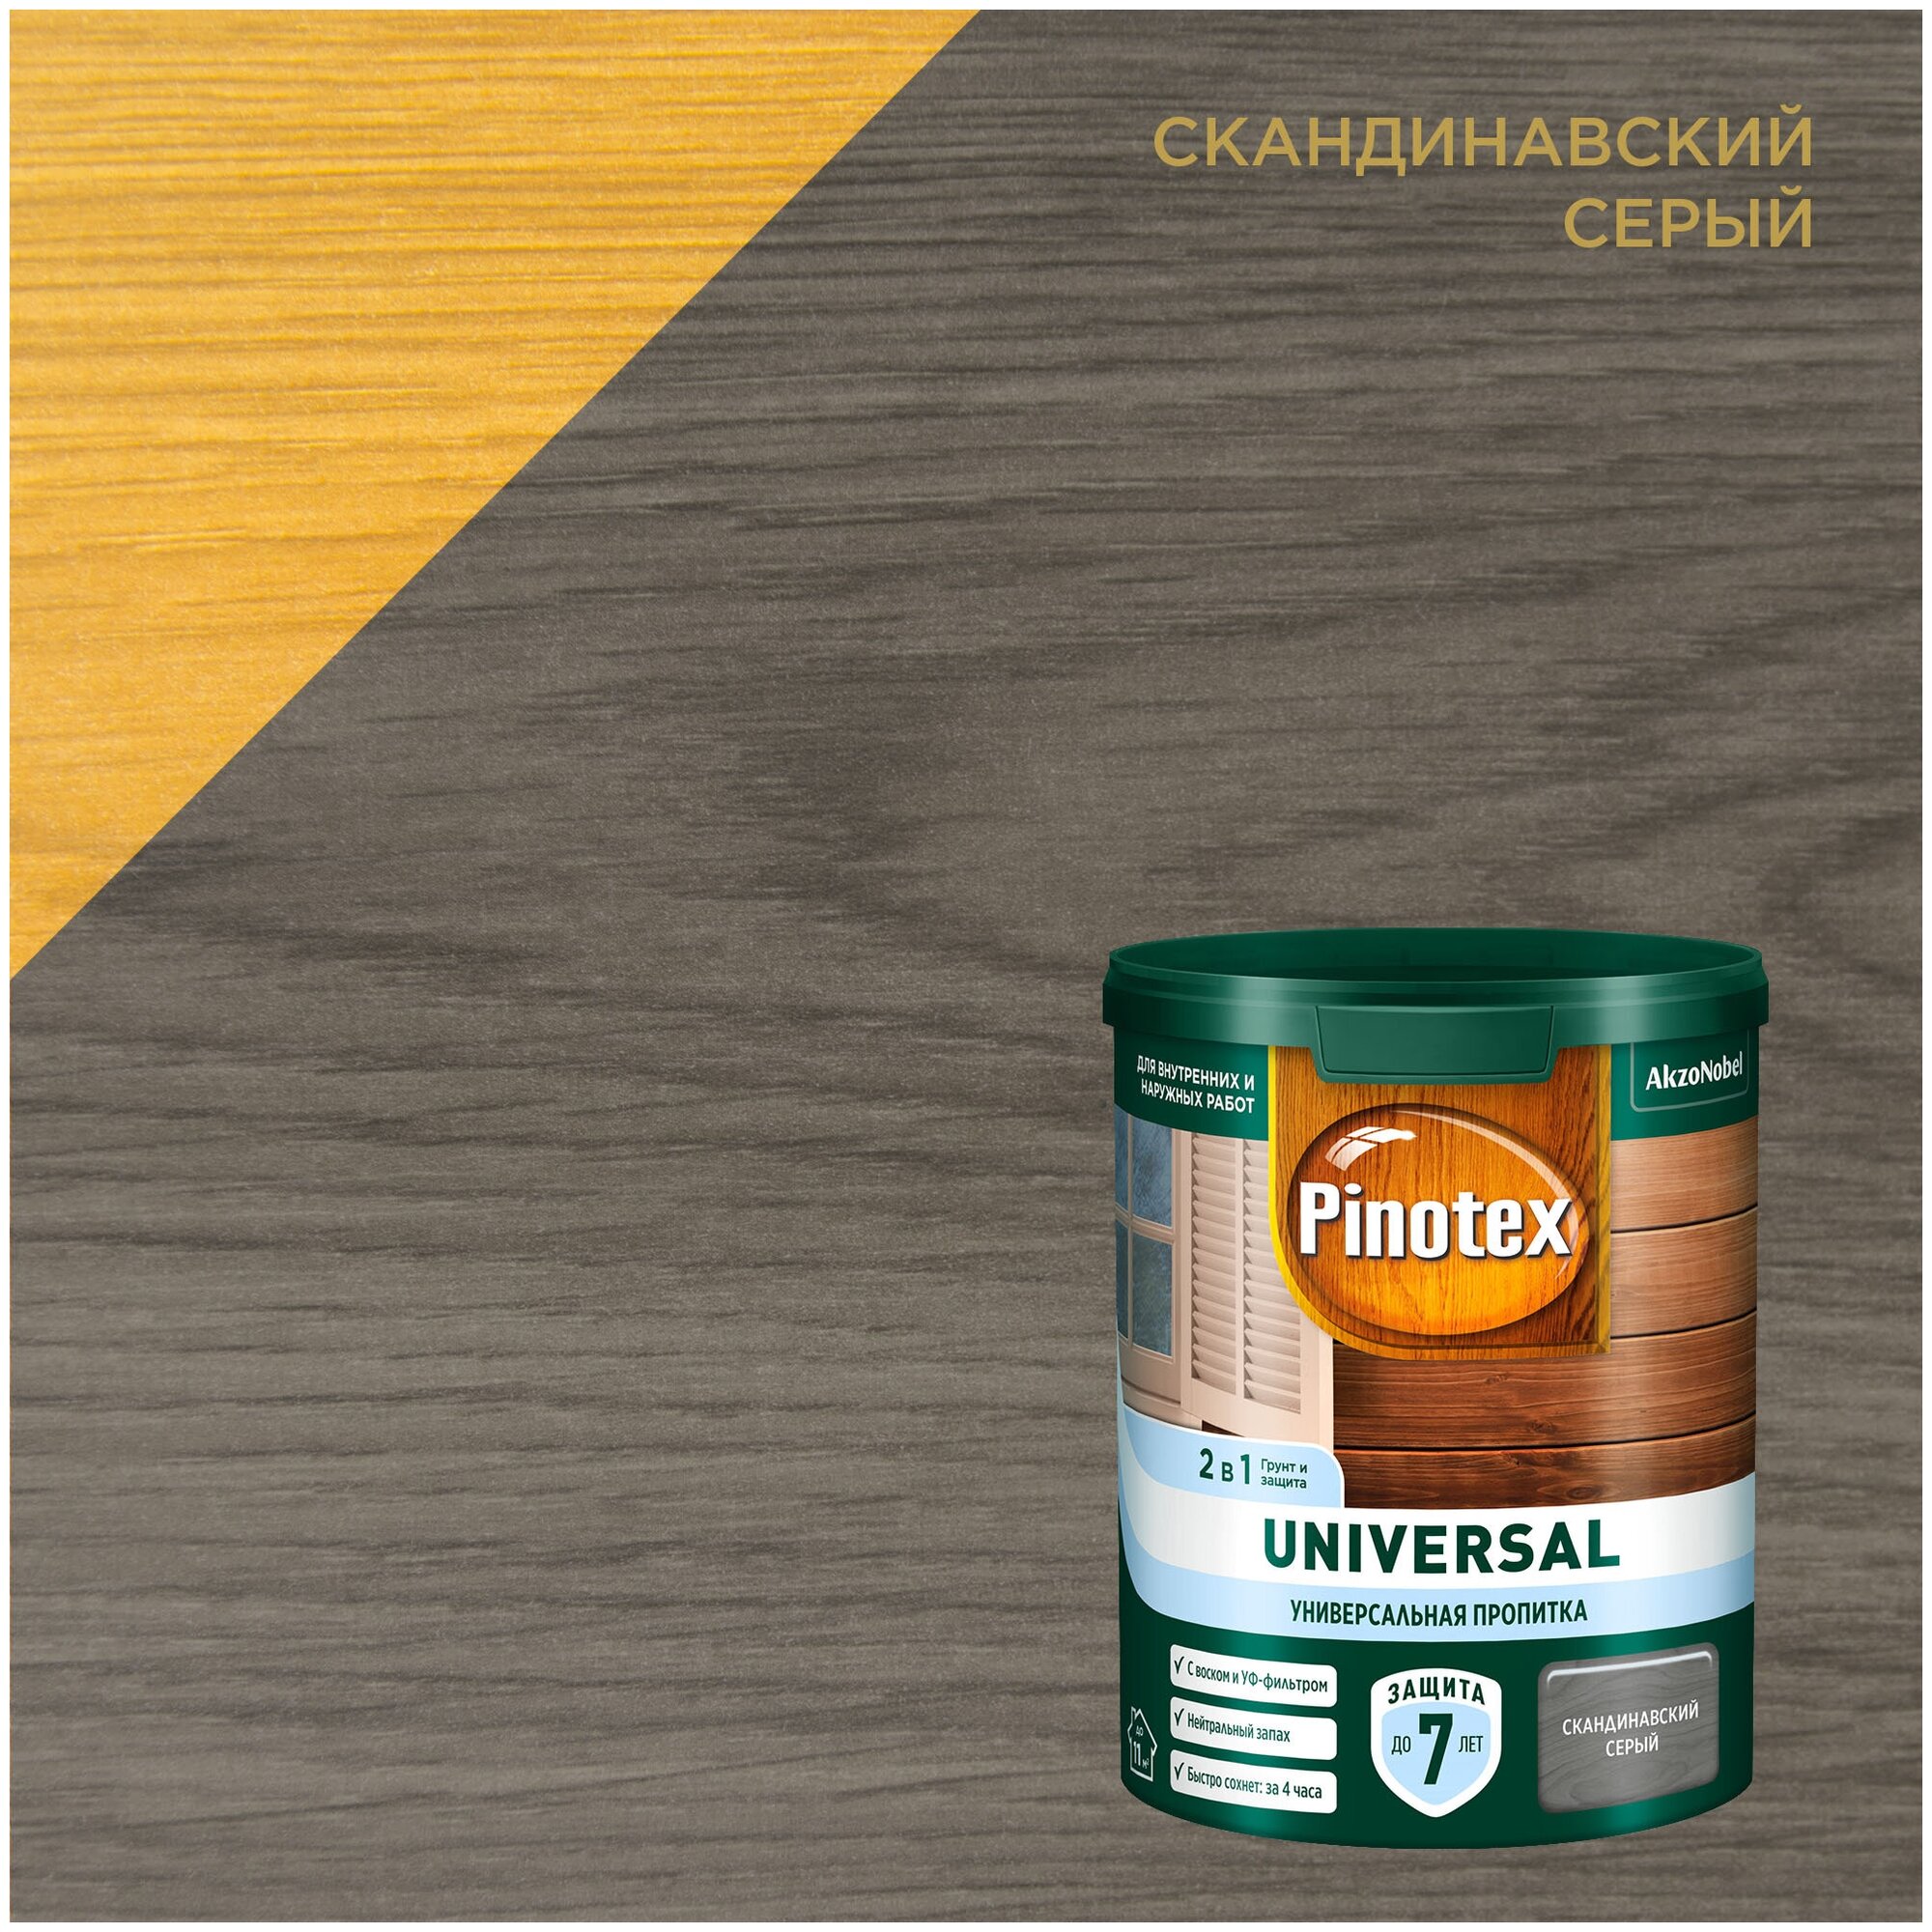 Универсальная пропитка на водной основе 2в1 для древесины Pinotex Universal полуматовая (0,9л) скандинавский серый